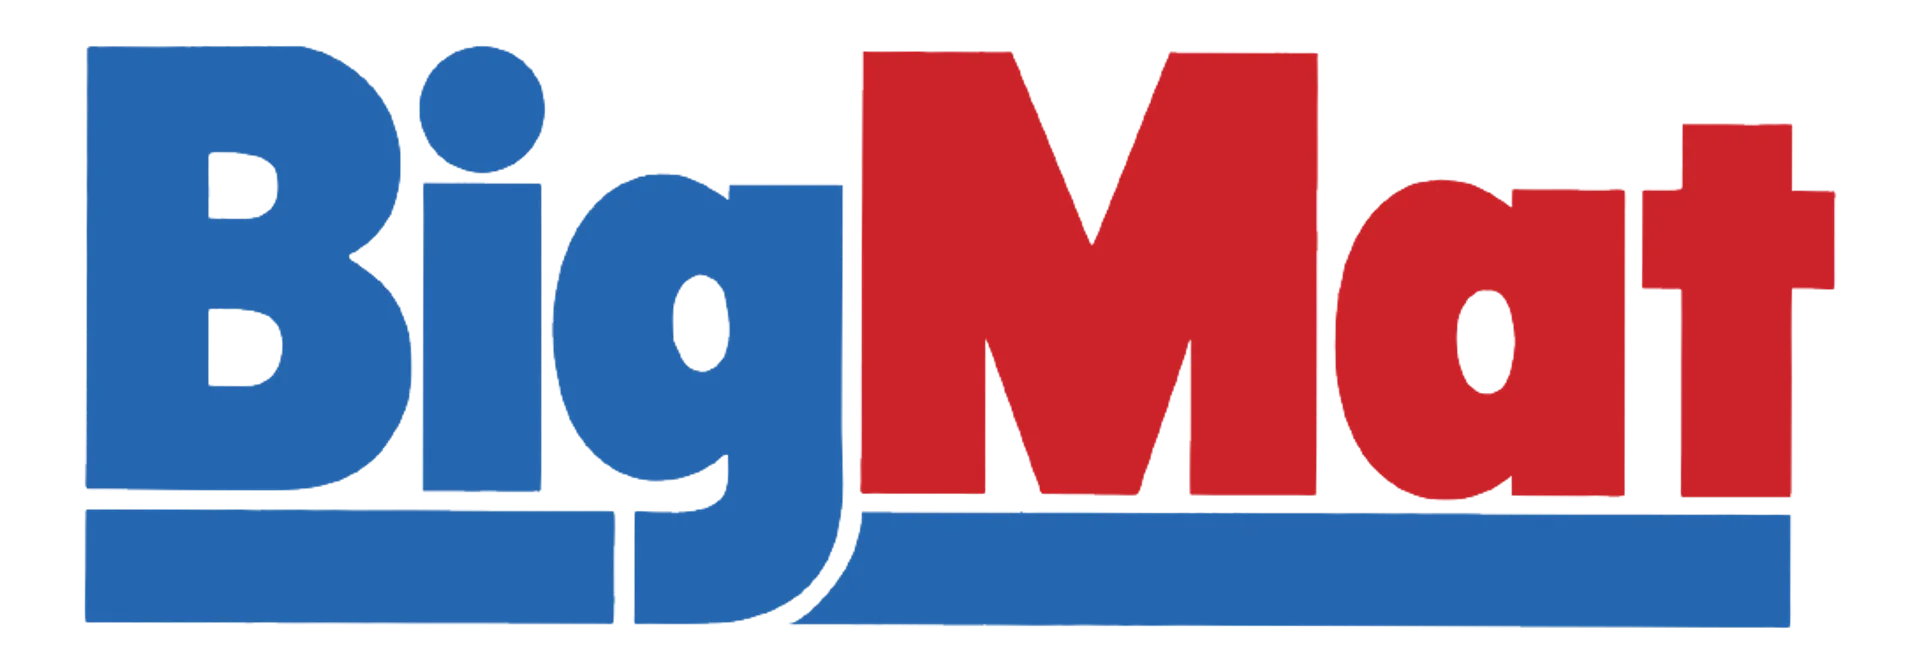 BIGMAT logo de folhetos